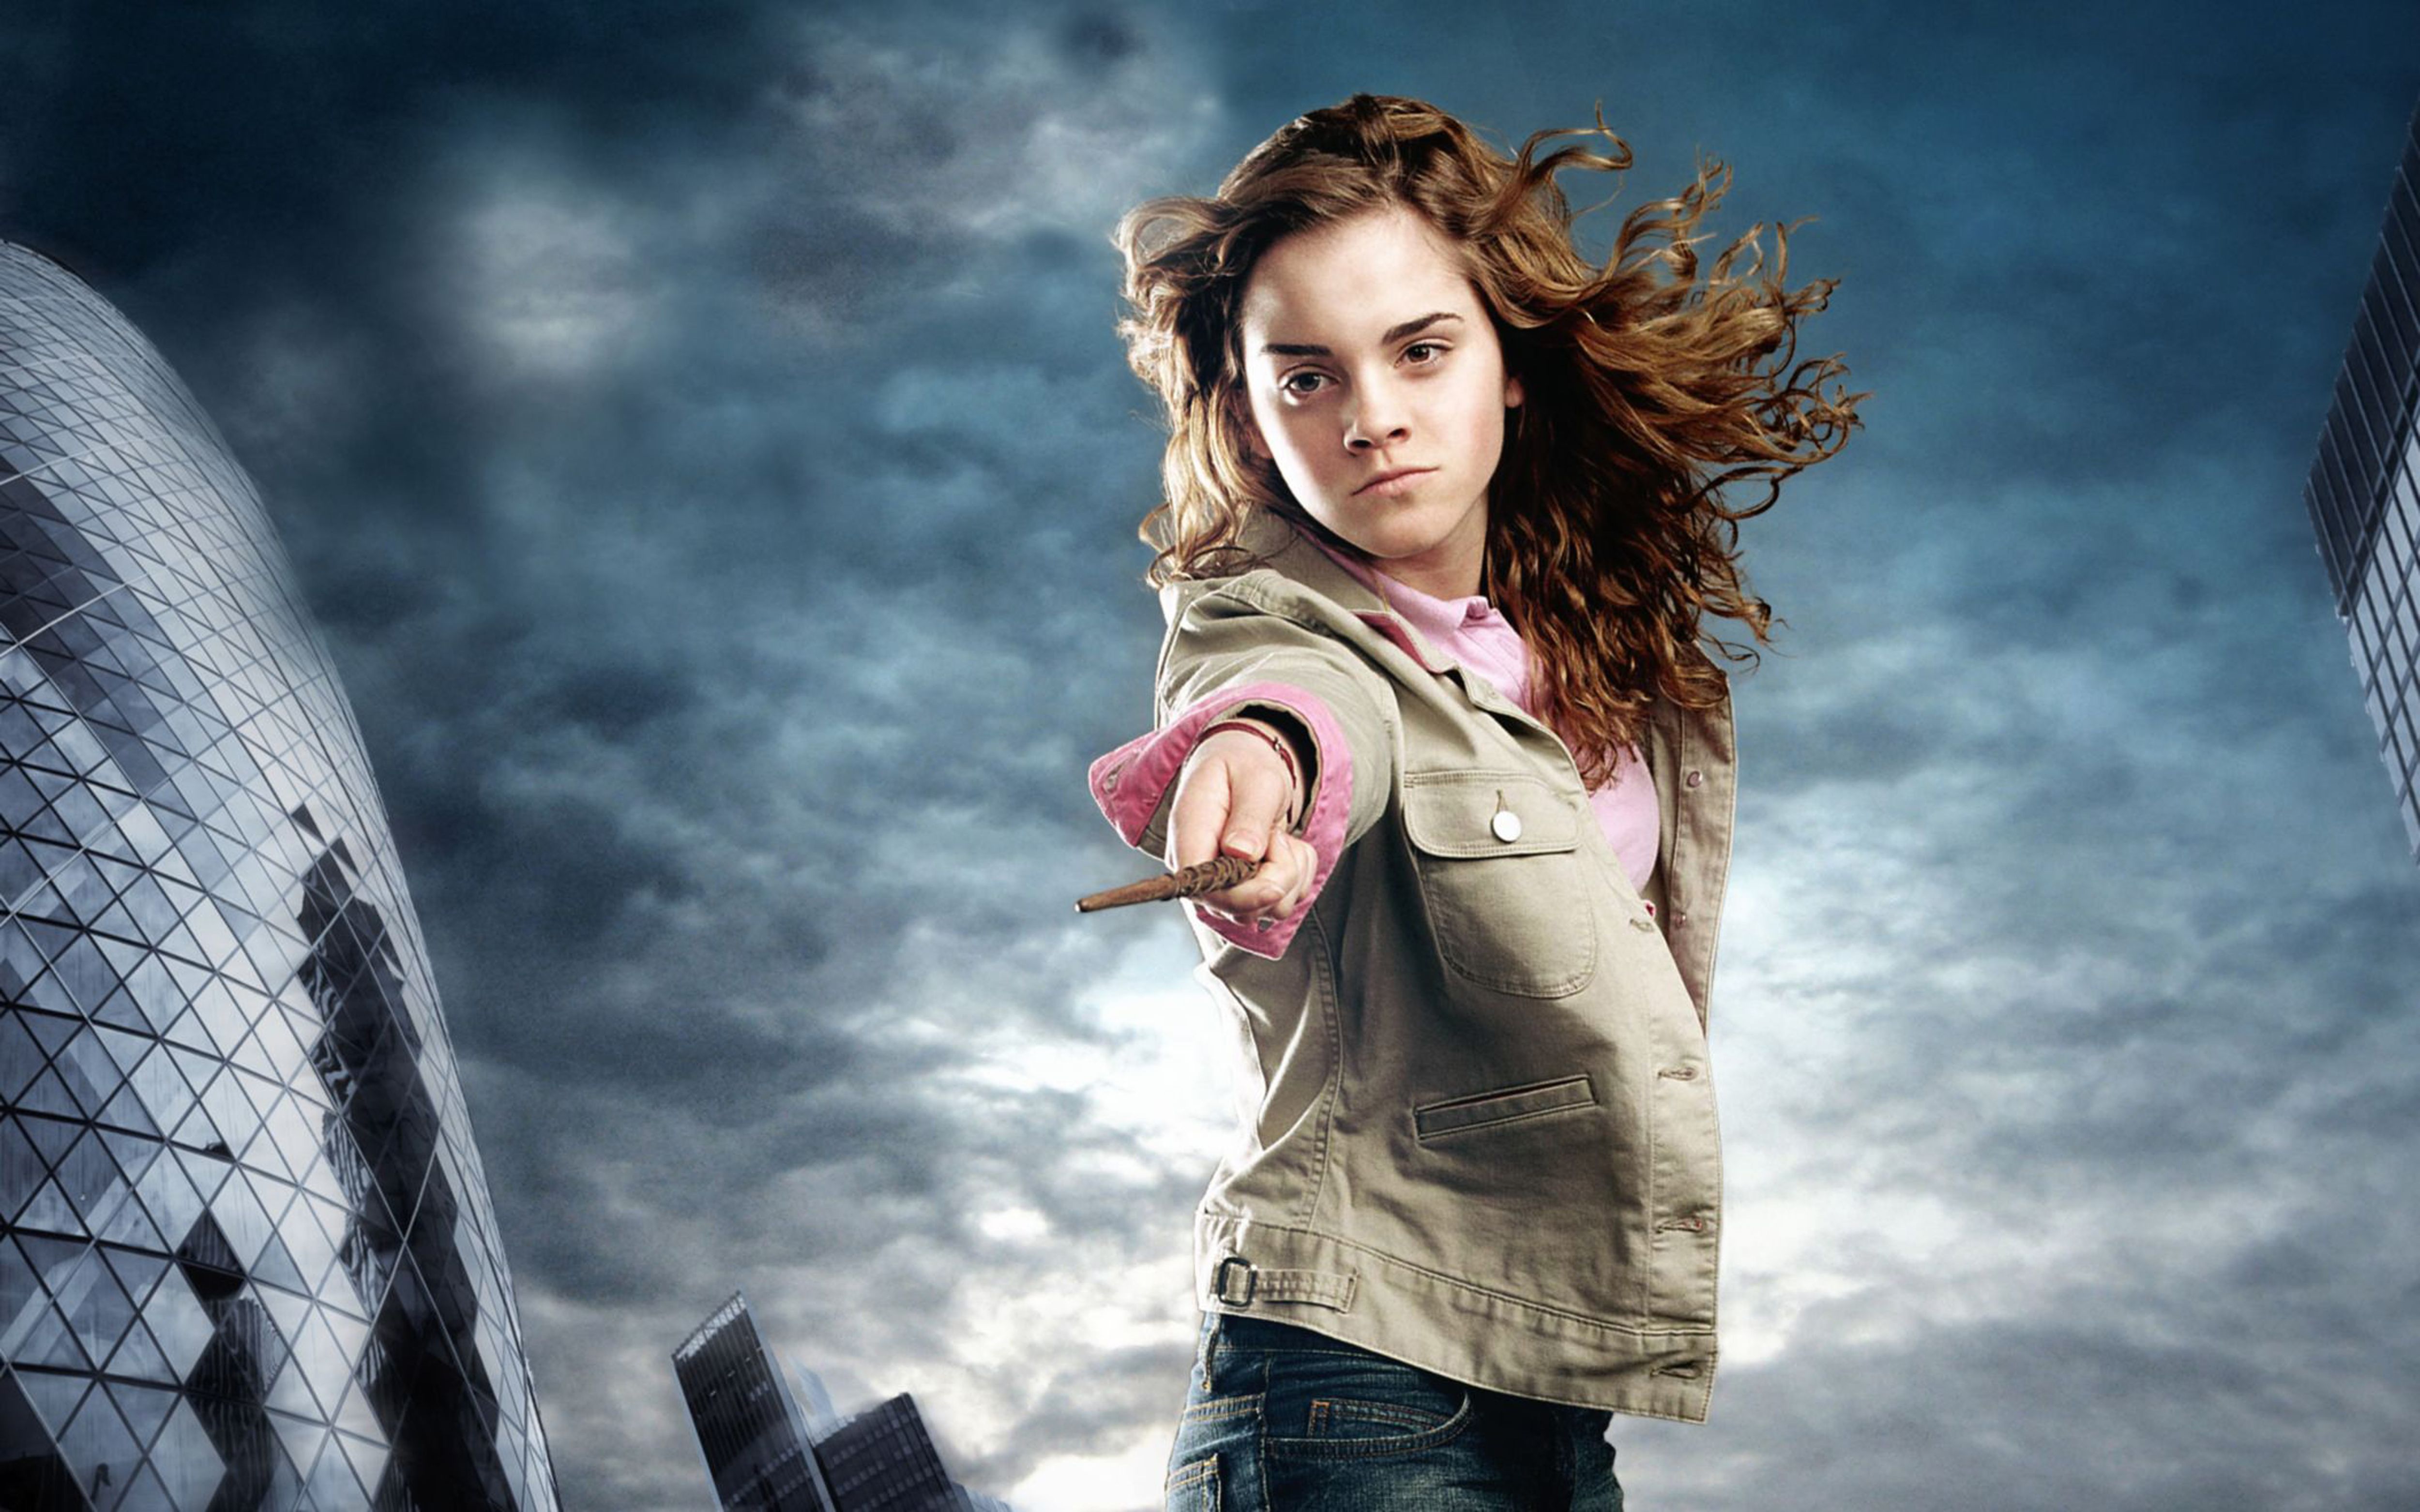 Hermione Granger Emma Watson Wallpaper #HermioneGranger #Hermione #EmmaWatson #HarryPotter. Emma watson wallpaper, Emma watson image, Emma watson